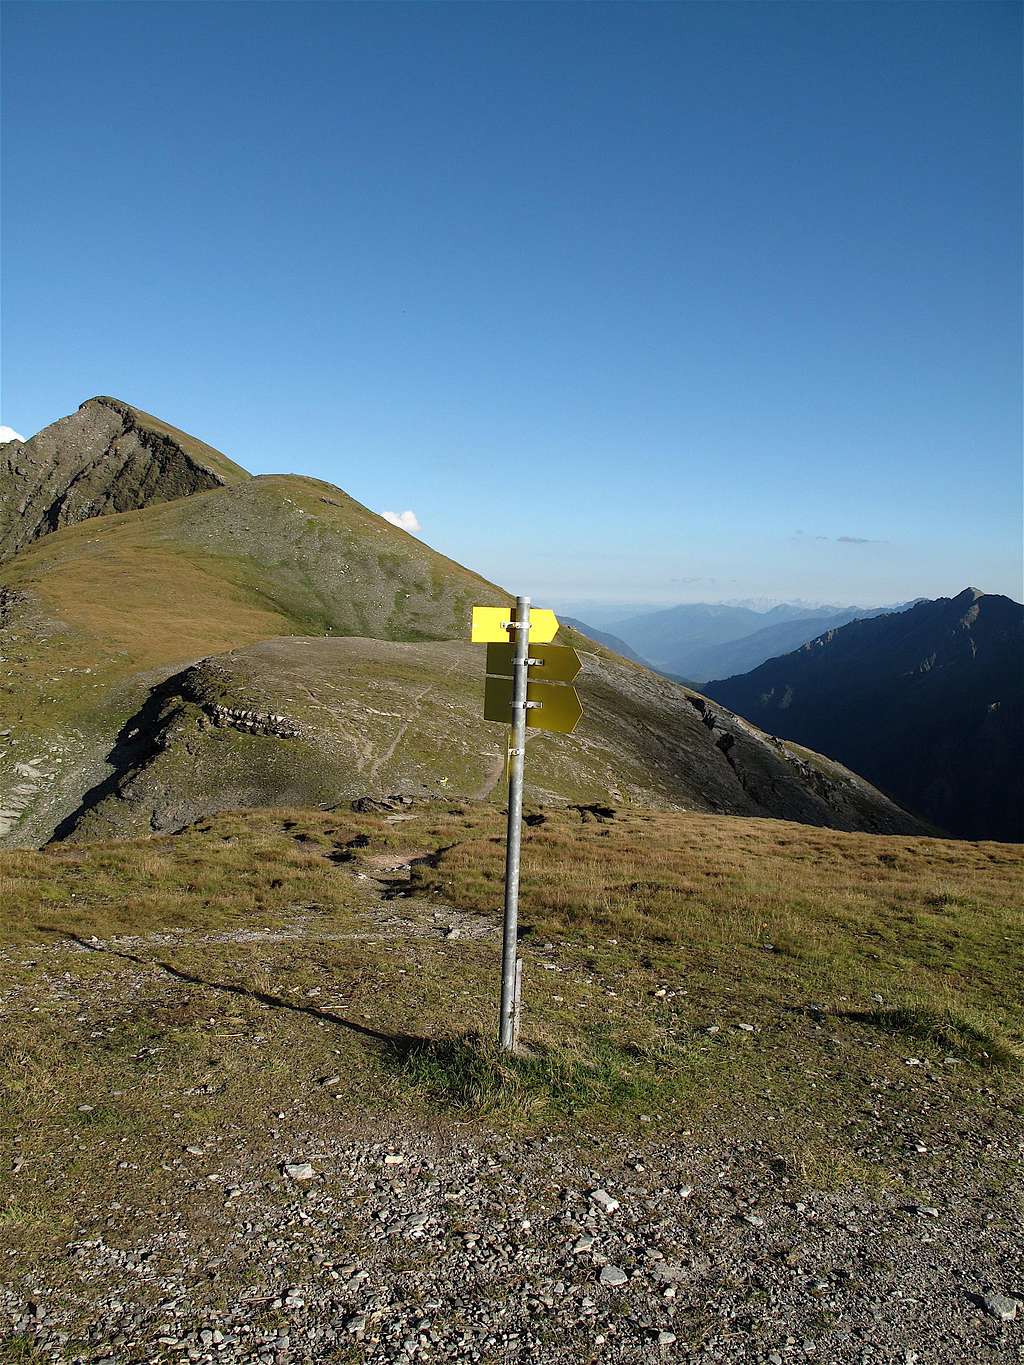 Signpost in front of the Hagen hut